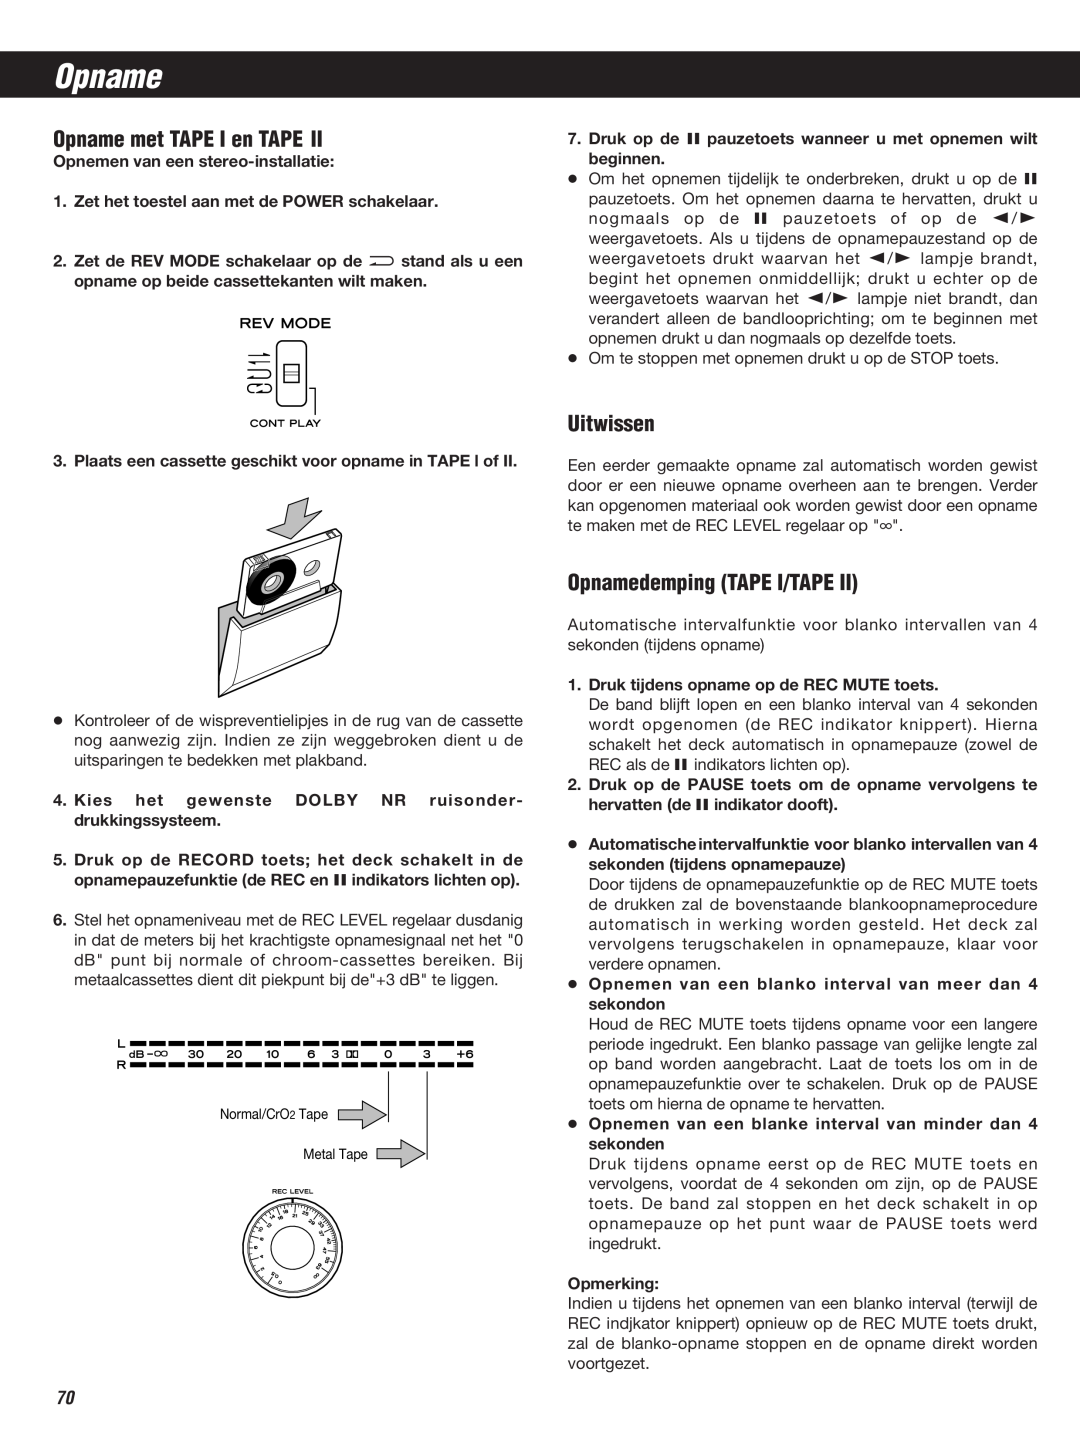 Teac W-860R owner manual Opname met TAPE I en TAPE, Uitwissen, Opnamedemping TAPE I/TAPE 